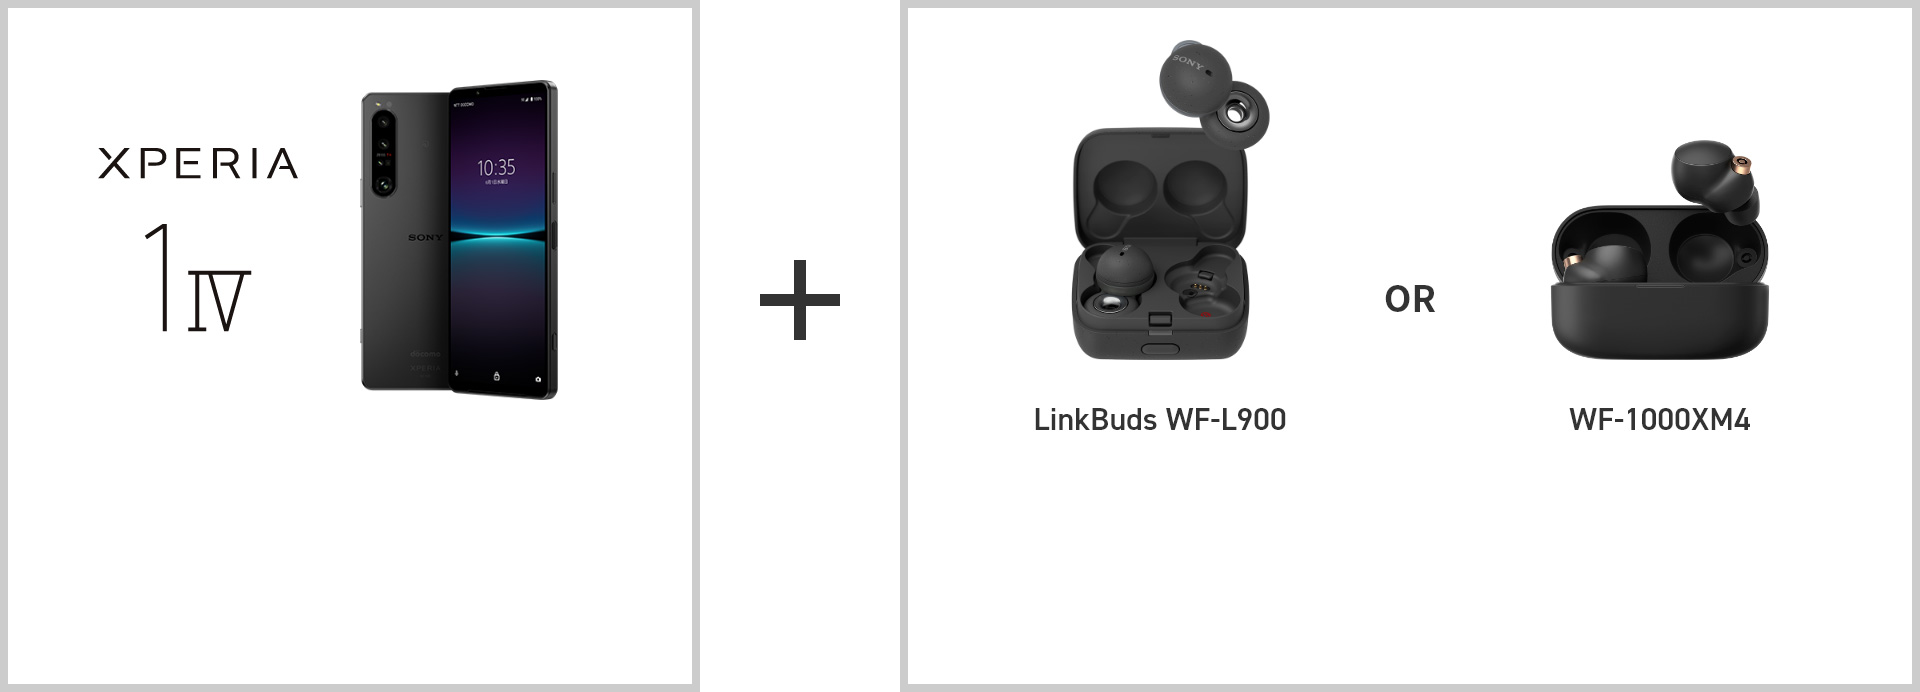 Xperia i IV + LinkBuds WF-L900 or WF-1000XM4